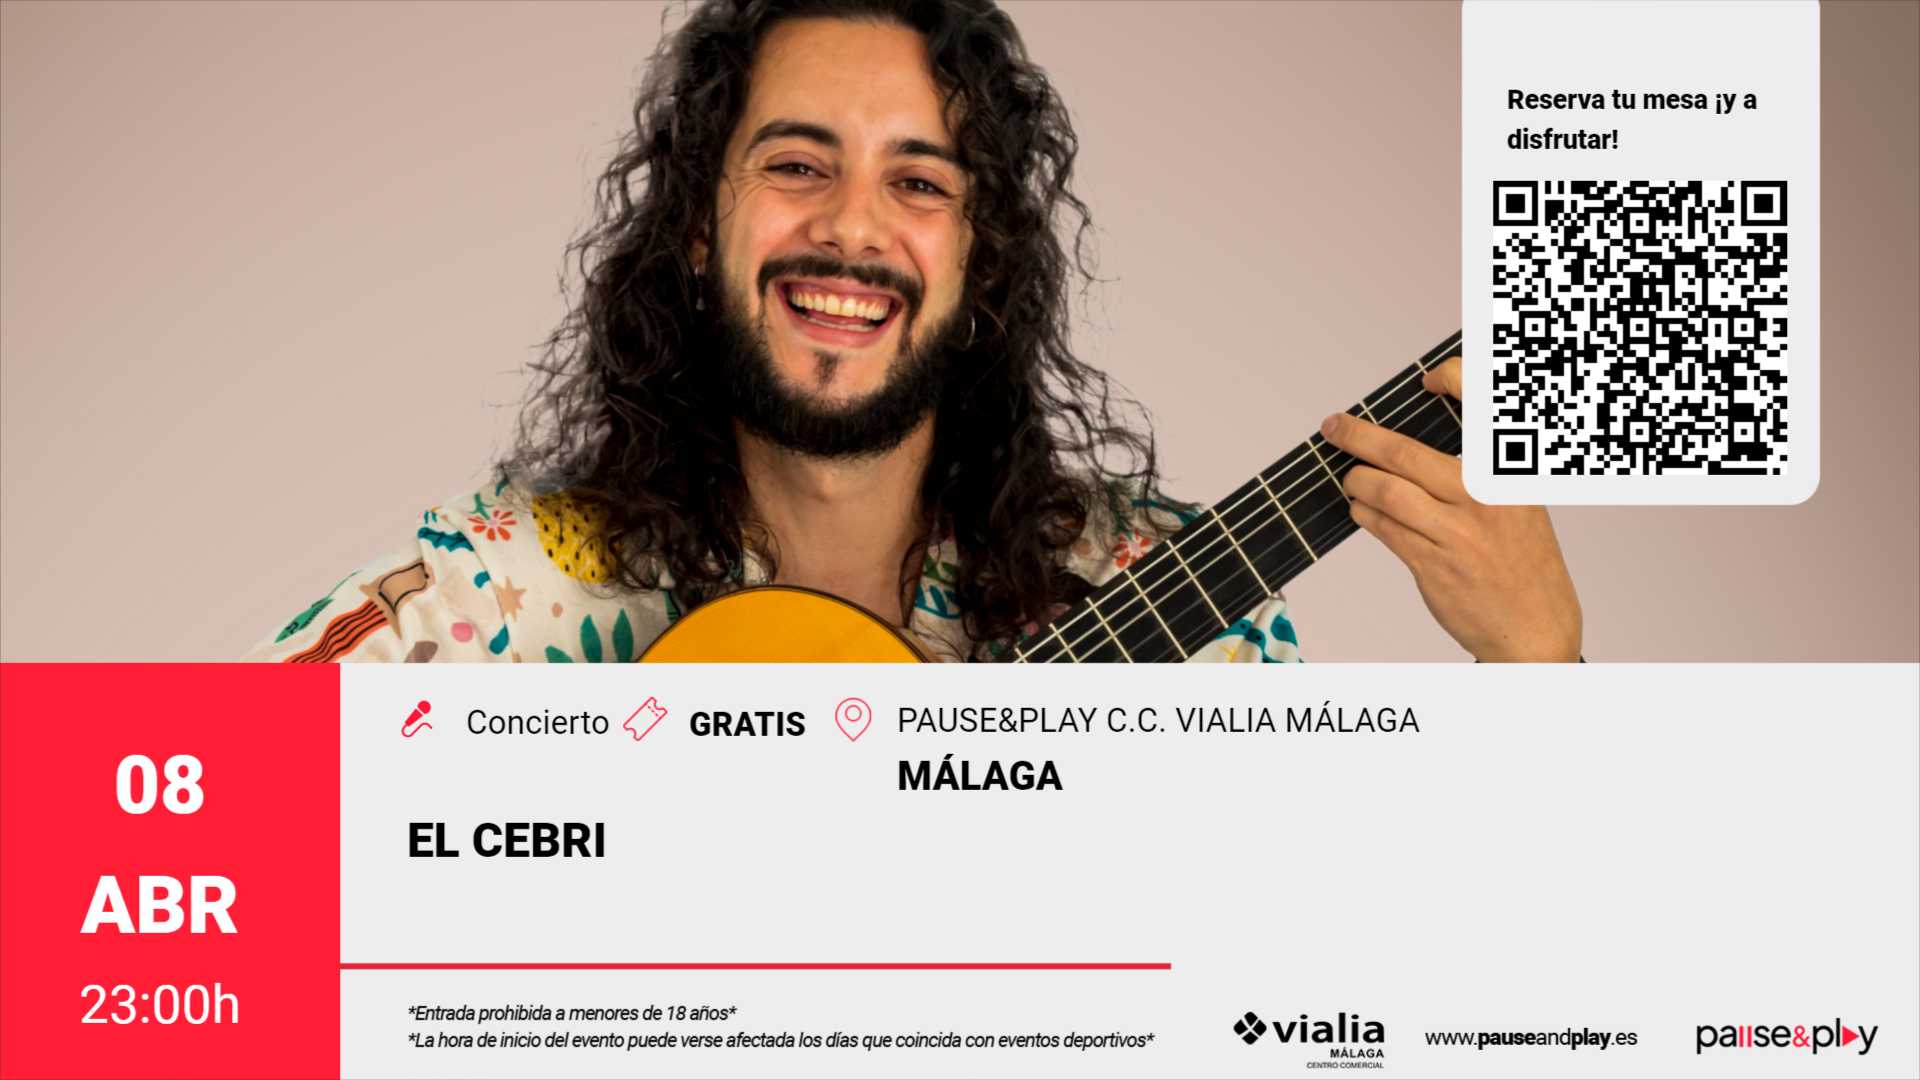 Concierto El Cebri - Pause&Play C.C. Vialia Málaga